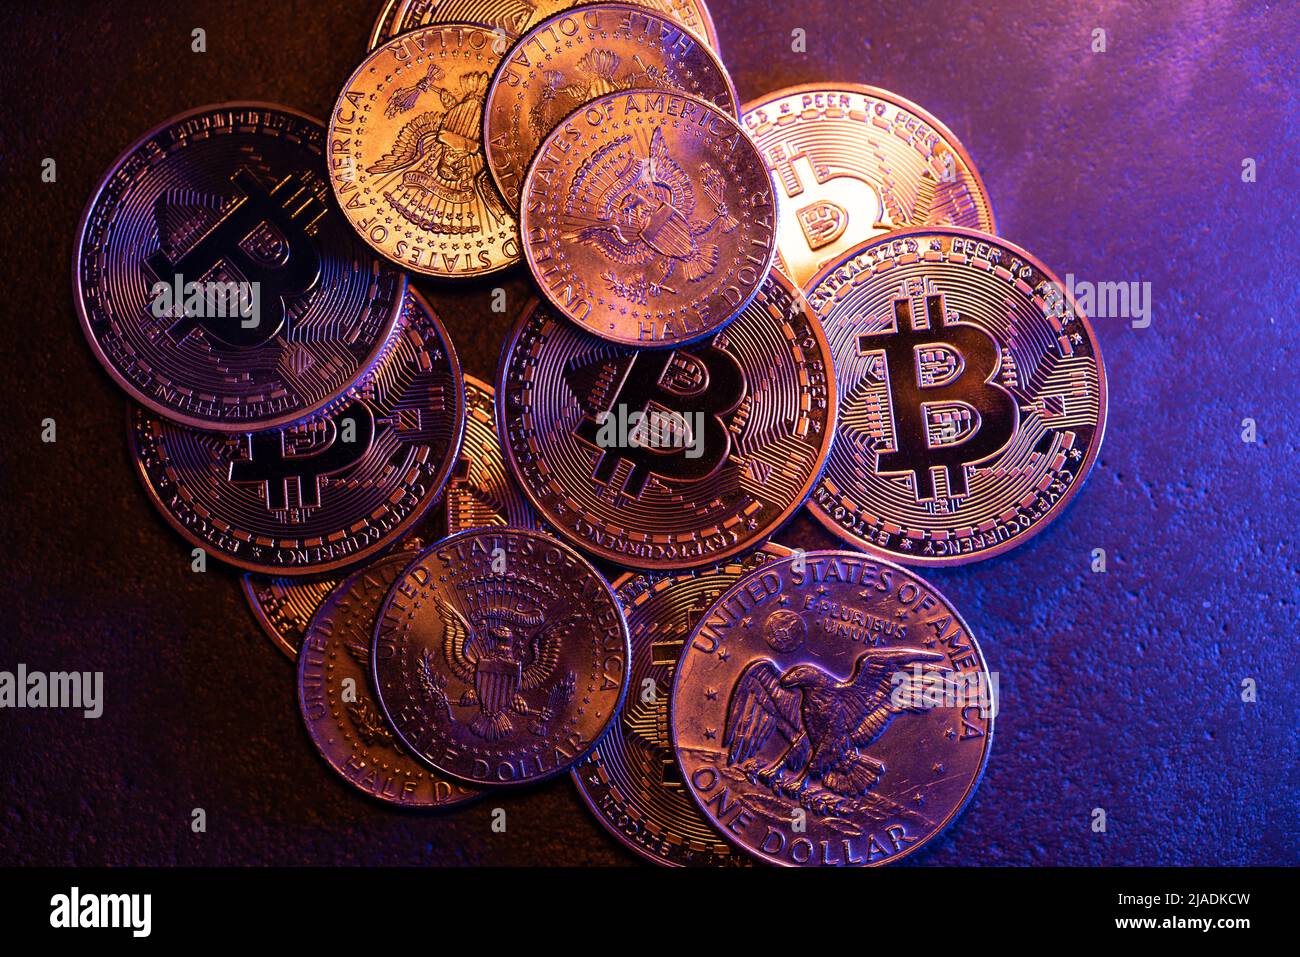 Billets de la moitié du dollar qui brillent sur les pièces en Bitcoin. Concept de crypto-monnaie aux États-Unis d'Amérique. Le commerce et l'exploitation minière Crypto Banque D'Images